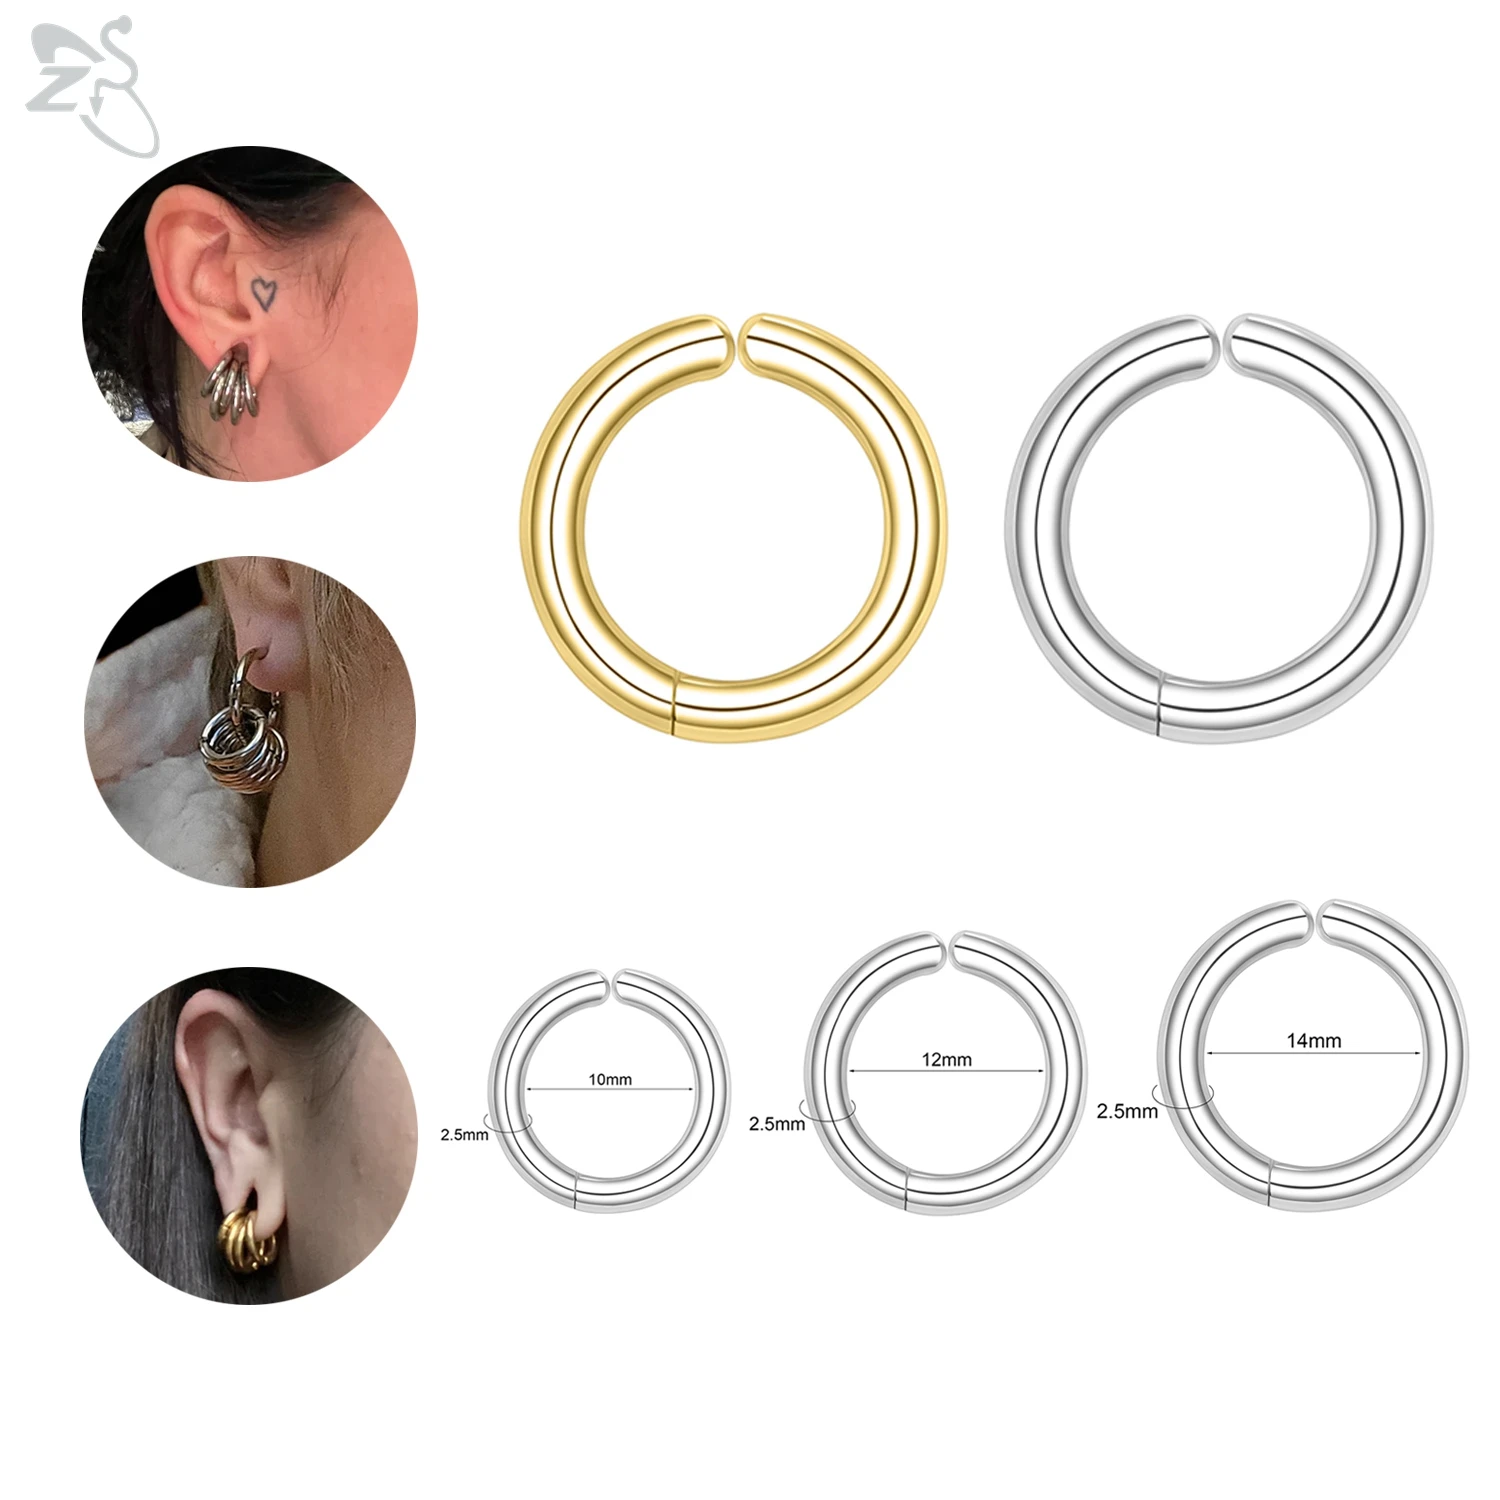 

AOEDEJ 1 Piece 10/12/14MM Stainless Steel Clip Earrings Gold Color Fake Piercing Earring Women Men Hoop Helix Cartilage Ear Cuff